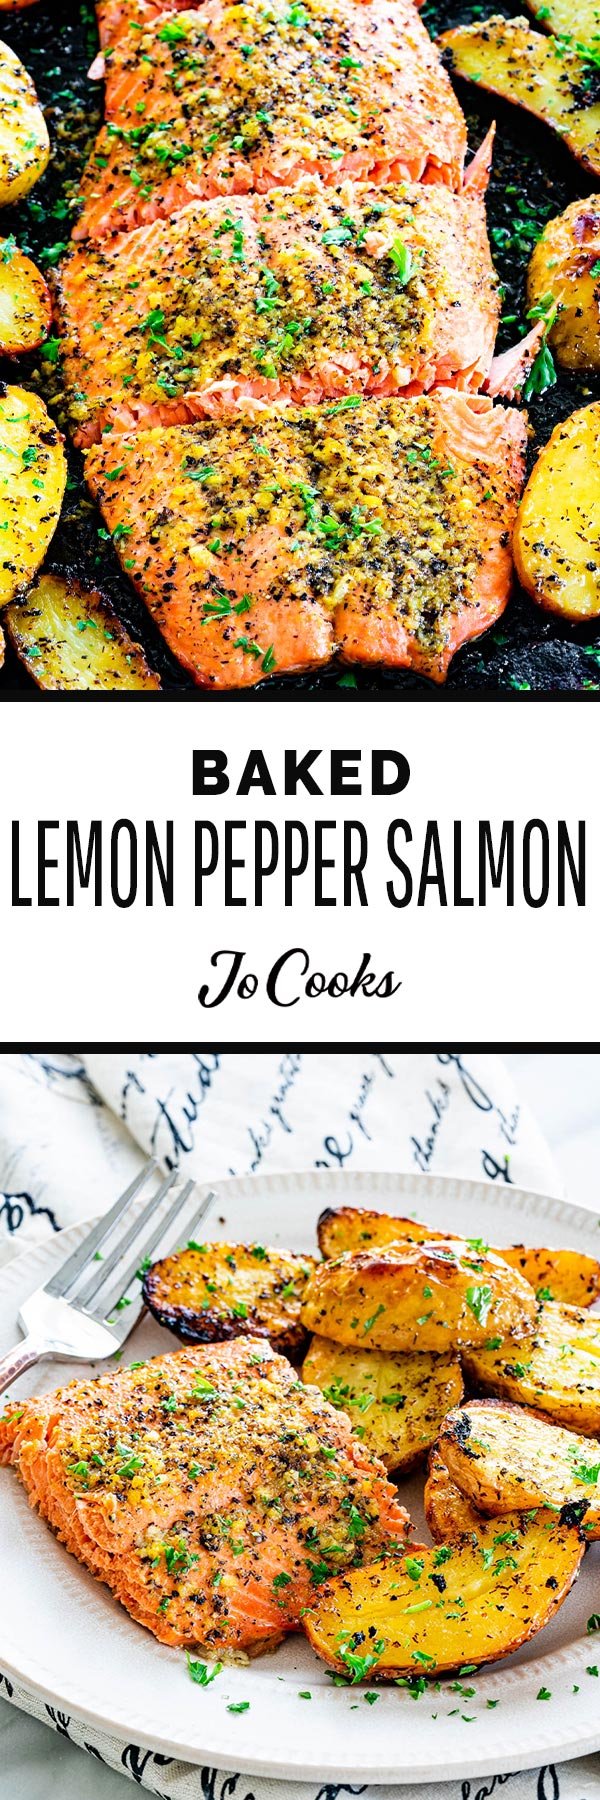 Baked Lemon Pepper Salmon - Jo Cooks